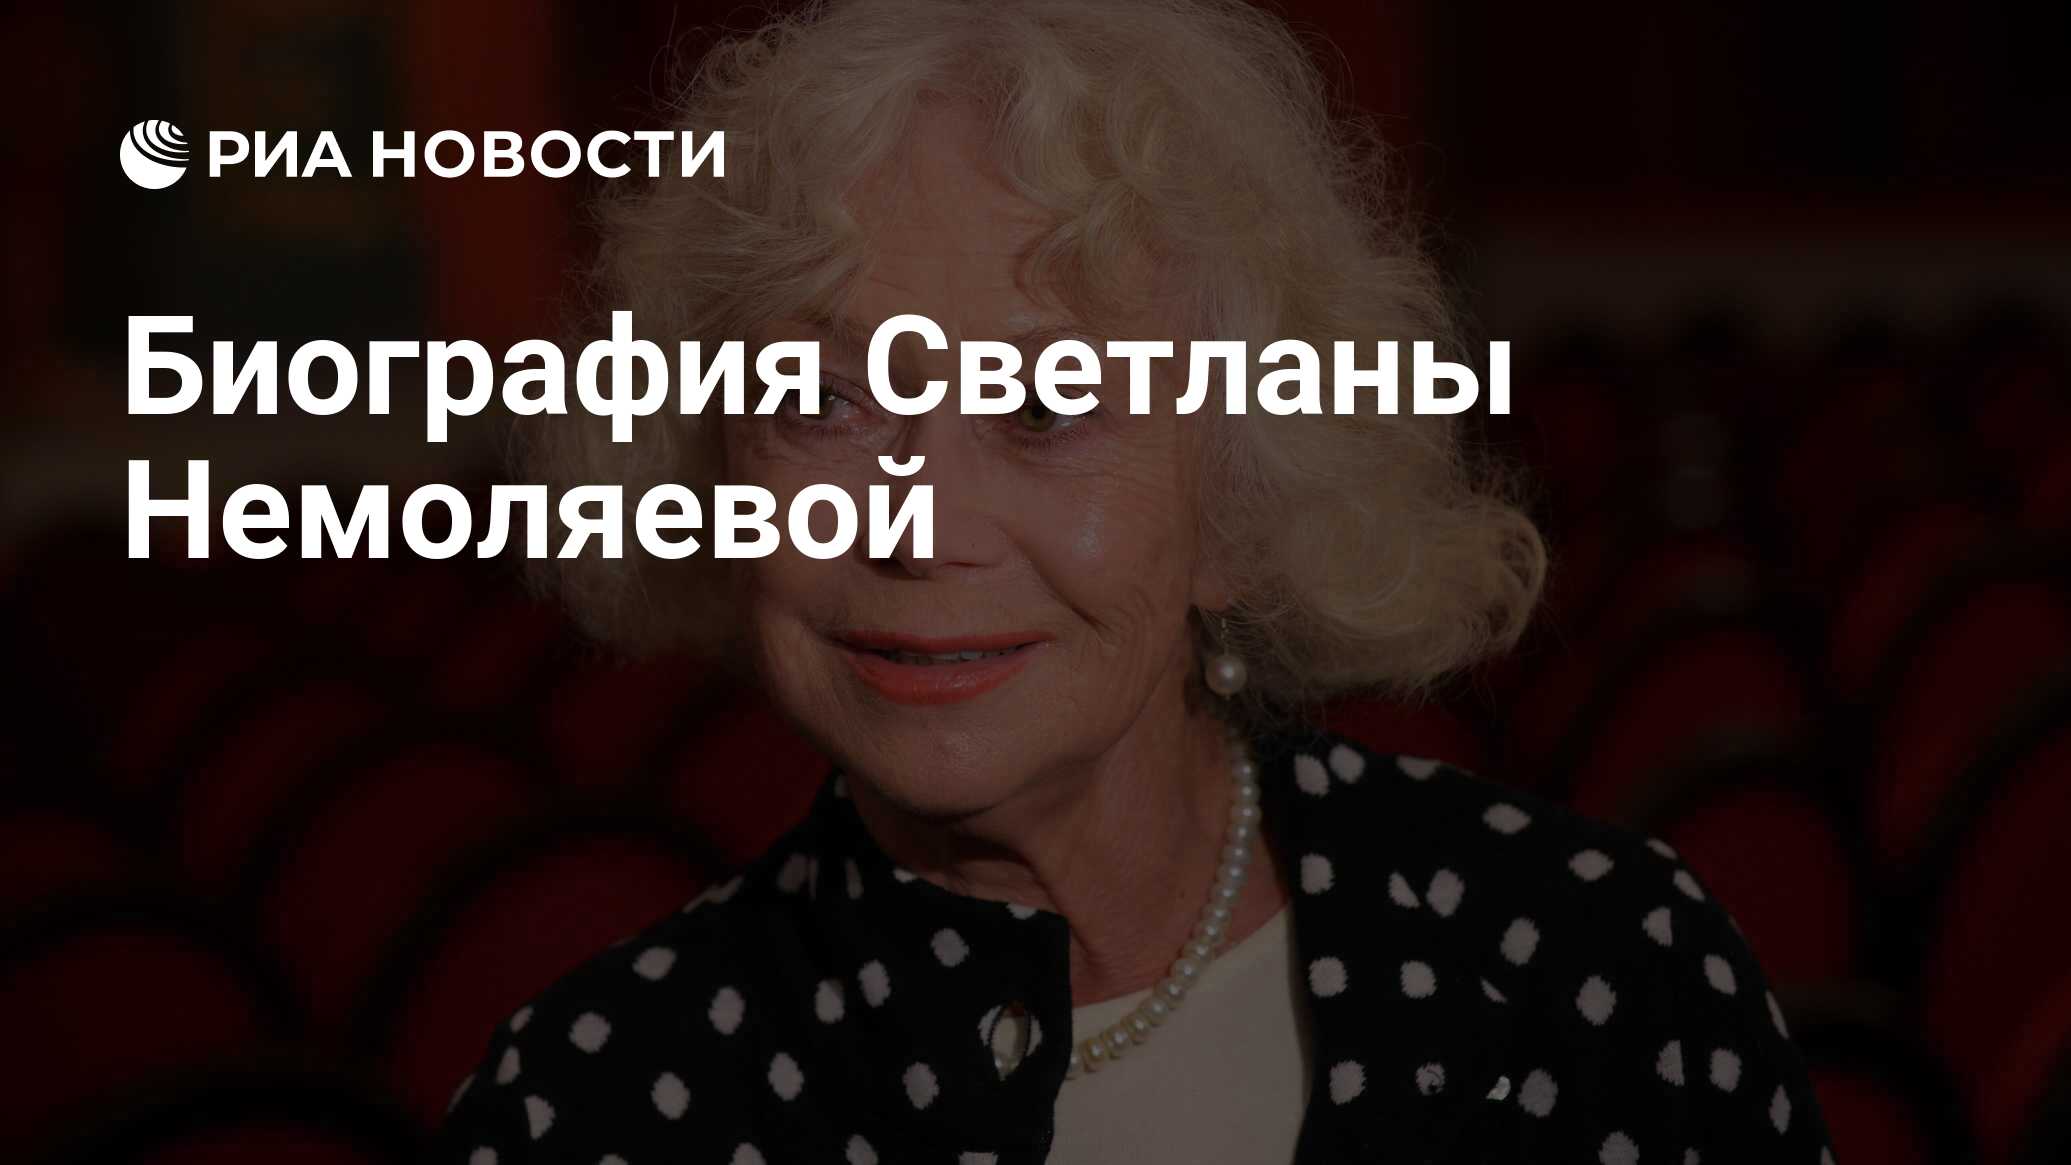 Биография Светланы Немоляевой - успешной актрисы российского кинематографа